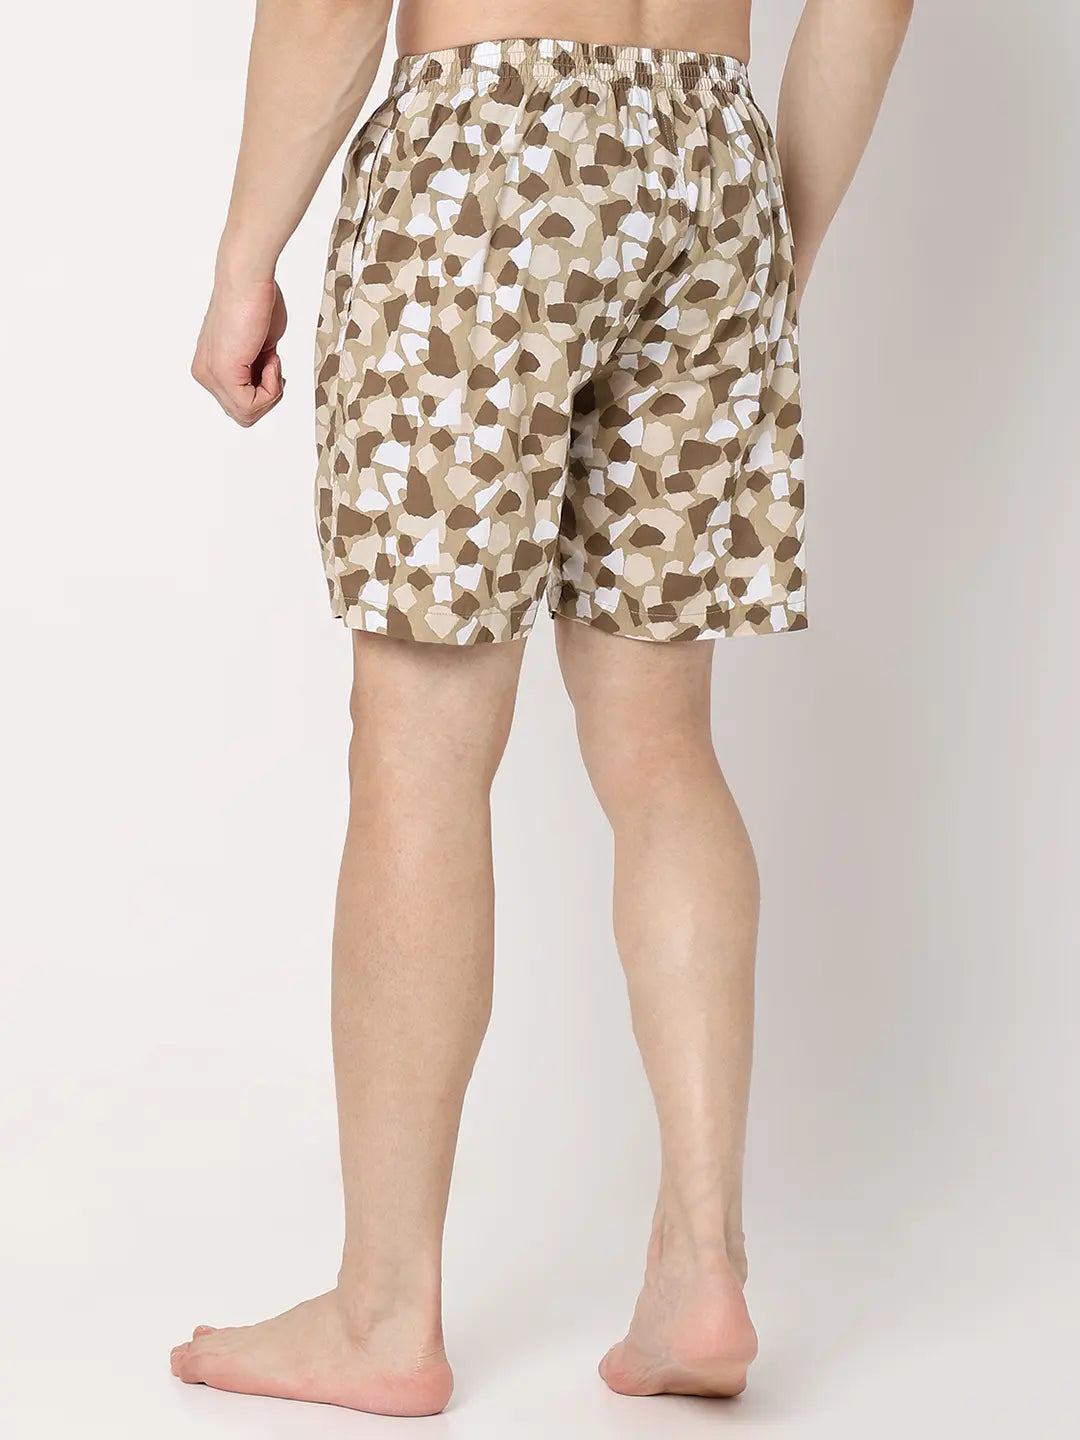 Underjeans by Spykar Men Premium Beige Cotton Blend Regular Fit Boxer Shorts